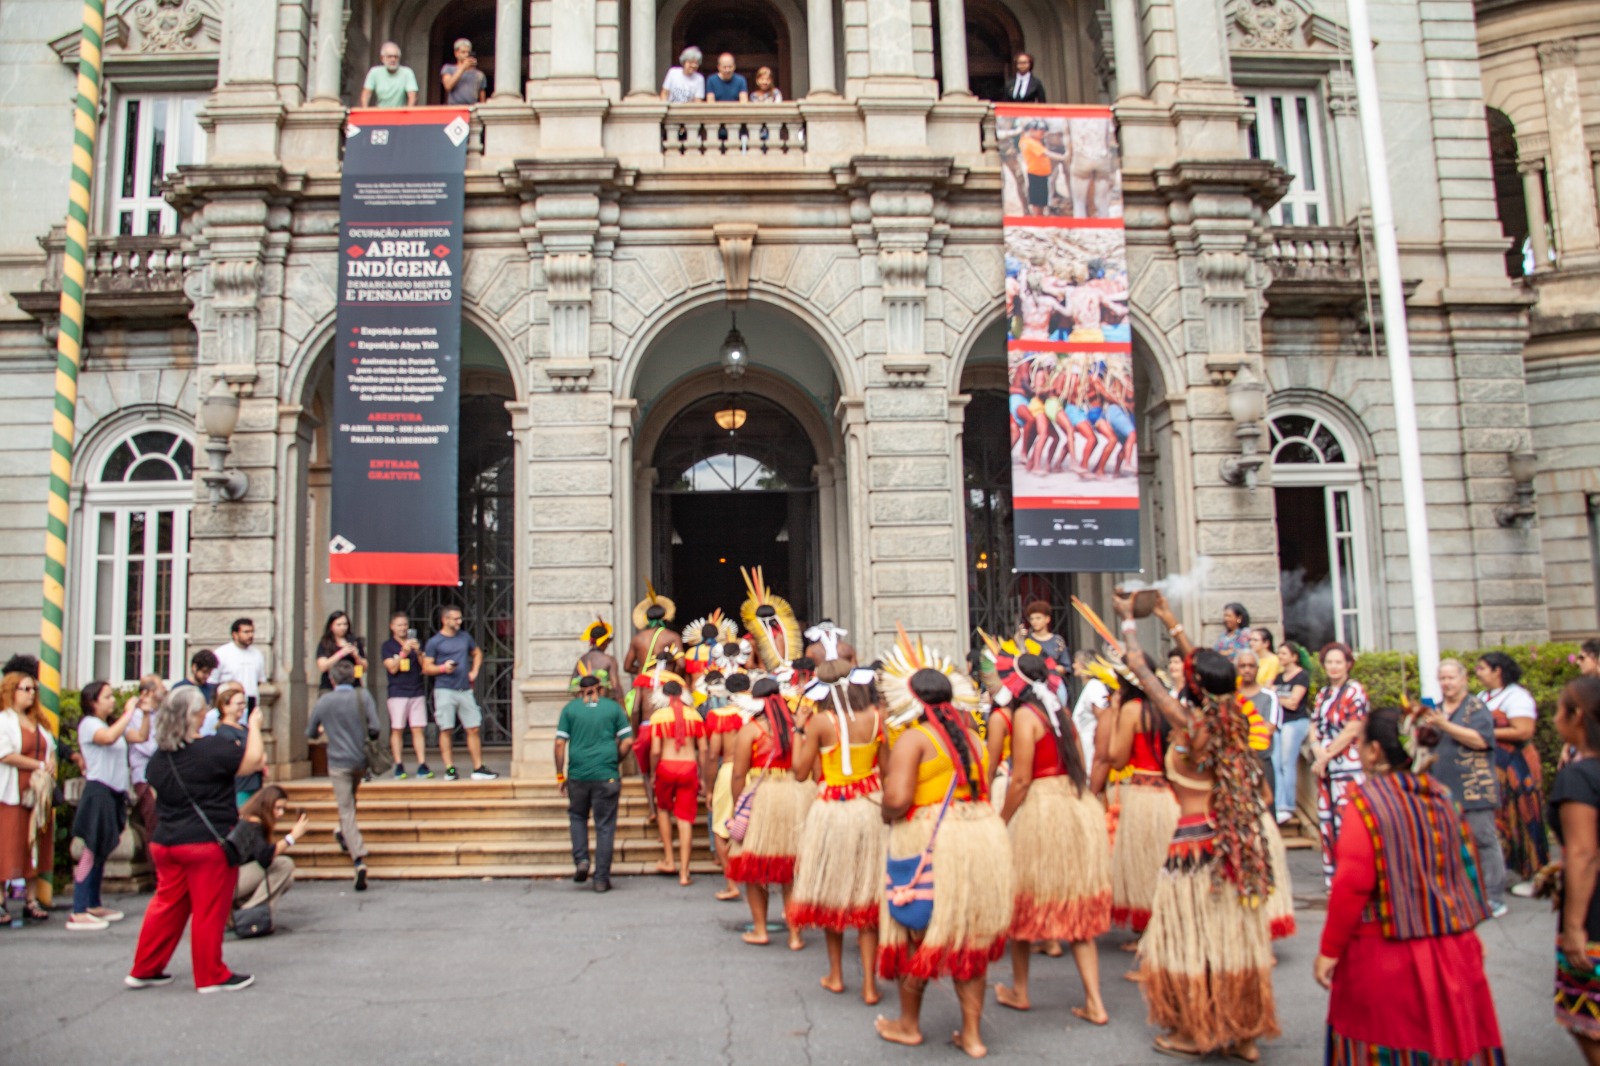 Governo de Minas abre a Ocupação Artística Abril Indígena no Palácio da Liberdade